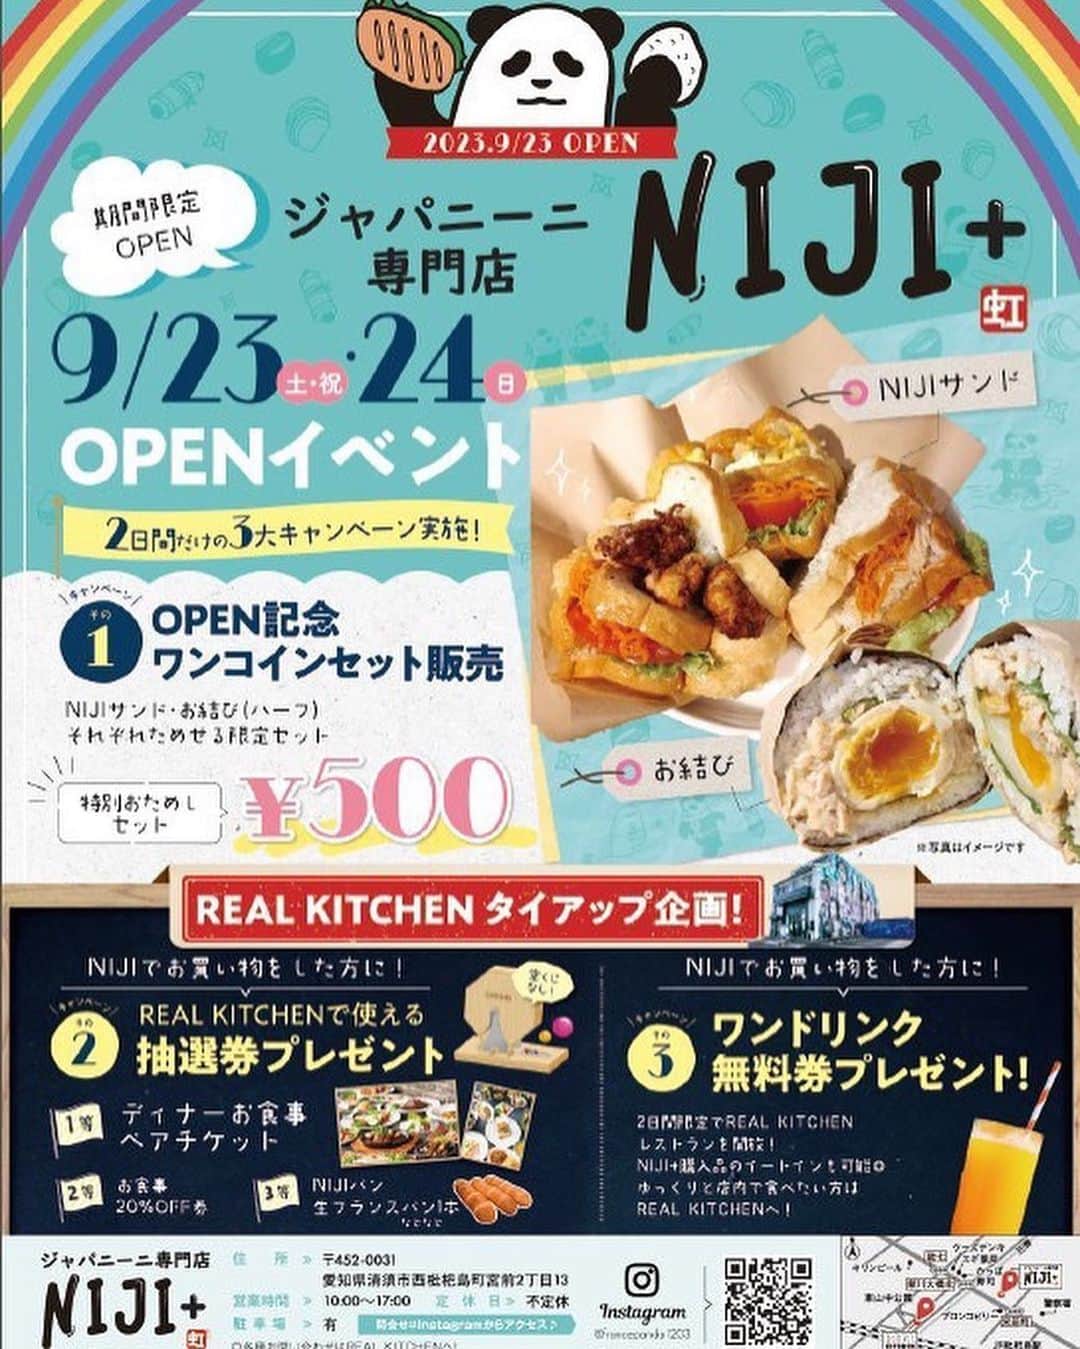 ナゴレコさんのインスタグラム写真 - (ナゴレコInstagram)「📍「NIJI+」 ･････････････････････････････････････････  “ジャパニーニ”って知ってる👀？  今日は清洲にあるジャパニーニ専門店「NIJI+」さんをご紹介🥪 ジャパニーニとは日本のお惣菜などを挟んだサンドイッチのこと✨  「NIJI+」さんでは、生ソフトフランスパンが人気の「NIJI」さんと「REALKITCHEN」さんがタッグを組み、ボリューム満点のジャパニーニを提供しています✊  味や素材にこだわったサンドイッチはどれもボリューム感たっぷり💯  「国産豚の生姜焼きサンド」や「くしたまWたまごサンド」など、具材がギュッと詰まったサンドイッチが楽しめますよ🥚💕  また、さまざまな具材を合わせてサンドしたおにぎりメニューも充実しています🍙✨  みんなもぜひ「NIJI+」さんでいつもと一味違うランチタイムを過ごしてみてね🌿  ┈┈┈┈┈┈┈┈┈┈┈┈┈┈┈┈┈┈┈  🍤名古屋のローカルグルメメディア【ナゴレコ】🍤  名古屋人がレコメンドする本当に美味しい名古屋めし🥢 これさえフォローしておけば、街の流行りがきっとわかる◎ 100名以上の編集部で作り上げる、名古屋エリア最大規模のグルメメディアです📝  他の投稿はこちらから👉 @nagoya_food  ┈┈┈┈┈┈┈┈┈┈┈┈┈┈┈┈┈┈┈  素敵な投稿にタグ付けしていただきありがとうございます✨  #ナゴレコ で、あなたの投稿をリポスト！ webサイト「ナゴレコ」もチェックしてね👀 ･････････････････････････････････････････  ☞ photo by （ @yoshie.nagoya ）さん  【清須市】 NIJI+ @francepanda1203 @realkitchen_jp ┈┈┈┈┈┈┈┈┈┈┈┈┈┈┈┈┈┈┈┈┈┈┈┈ 🥙惣菜をパンやご飯ではさんだサンドイッチ専門店 🥙9月23日OPEN！23日24日イベント開催！ 🥙生ソフトフランスパンNIJIとリアルキッチンのコラボ店 🥙生ソフトフランスパンの購入も可能 ┈┈┈┈┈┈┈┈┈┈┈┈┈┈┈┈┈┈┈┈┈┈┈┈ 🖋️ @yoshie.nagoya （お米派と言いたいけど） ┈┈┈┈┈┈┈┈┈┈┈┈┈┈┈┈┈┈┈┈┈┈┈┈ サンドイッチとおむすび、あなたはどっち派❓  東京で大人気だったNIJI の生ソフトフランスパンが清須にやってきた‼️ サイズは全長50cmと巨大。卵と乳製品は不使用☝️ フランスパンなのに、もっちり柔らかで、 噛むことに広がるパンの甘みがクセになるよ😋  そんな人気で絶品なパンを使った 「ジャパニーニ専門店」が9月23日オープン🎊 惣菜店REALKITCHENとのコラボのサンドイッチ屋さんなんだけど、とりあえず凄かった🤩  あ☝️おむすび派さんに朗報㊗️ まさかのサンドイッチ&おむすび、両方を買うことができる天国のようなお店❤️ しかも、定番やオリジナルなど30種以上‼️ 日替わりや数量限定あるらしい✨👀  今回独断と偏見の上、6種類を頂きました😋 ┈┈┈┈┈┈┈┈┈┈┈┈┈┈┈┈┈┈┈┈┈┈┈┈ 🔹くしたまWたまごサンド 🔹国産豚の生姜焼きサンド パンはトーストしてあるし、クオリティが高い‼️ 具がしっかり入っていて重たいのよ🤣💕 野菜はマリネにしてあったり一つ一つ手が込んでいる👏  🔹鯖西京焼にぎり 🔹明太子にぎり 🔹スパムにぎり🔹スパイシータコスミートにぎり お米自体の塩味が薄めなので、具材の味と味付けをしっかりと楽しめた😋 スパムにぎりは中に卵焼き入ってた〜🙌 ┈┈┈┈┈┈┈┈┈┈┈┈┈┈┈┈┈┈┈┈┈┈┈┈ 両方ともビックリな美味しさ。 具材がオリジナリティに富んでいて楽しい💓 種類が多いから、選べる楽しみがあるのは嬉しいな！  NIJIフランスパンと同じ生地で作ったピザなんてのも販売してて、それも絶品だった🍕  ちなみに、REALKITCHENも凄く素敵なお店で、 美と健康＆安全と安心をテーマに惣菜を作ってるお店🥰 その惣菜を使っているから、そりゃ美味しいわ。 罪悪感なく食べられるのも最高です👍💕  9月23・24日はオープンイベントを開催‼️ サンドとおむすび両方が入ったワンコインセットや、 テイクアウト専門店なんだけど、2日間限定で REALKITCHEN のレストラン席でも食べられる！とかとか。 色々やるそうです😆  巨大フランスパンは、他ではお目にかかれないので、それだけでも見てほしいところ🤣  おむすび派だったけど、サンドイッチが衝撃的すぎて、今回はサンドイッチ派になろうかなぁと思った次第です🥺 感動的だったのー！！！のー！！！ と、ここまで気持ちを揺さぶってくれるサンドイッチと、オリジナリティ高すぎるおむすびに出会えた事に感謝💖  ニジプラスさん、オープンおめでとうございます🥳 ┈┈┈┈┈┈┈┈┈┈┈┈┈┈┈┈┈┈┈┈┈┈┈┈」9月30日 17時51分 - nagoya_food